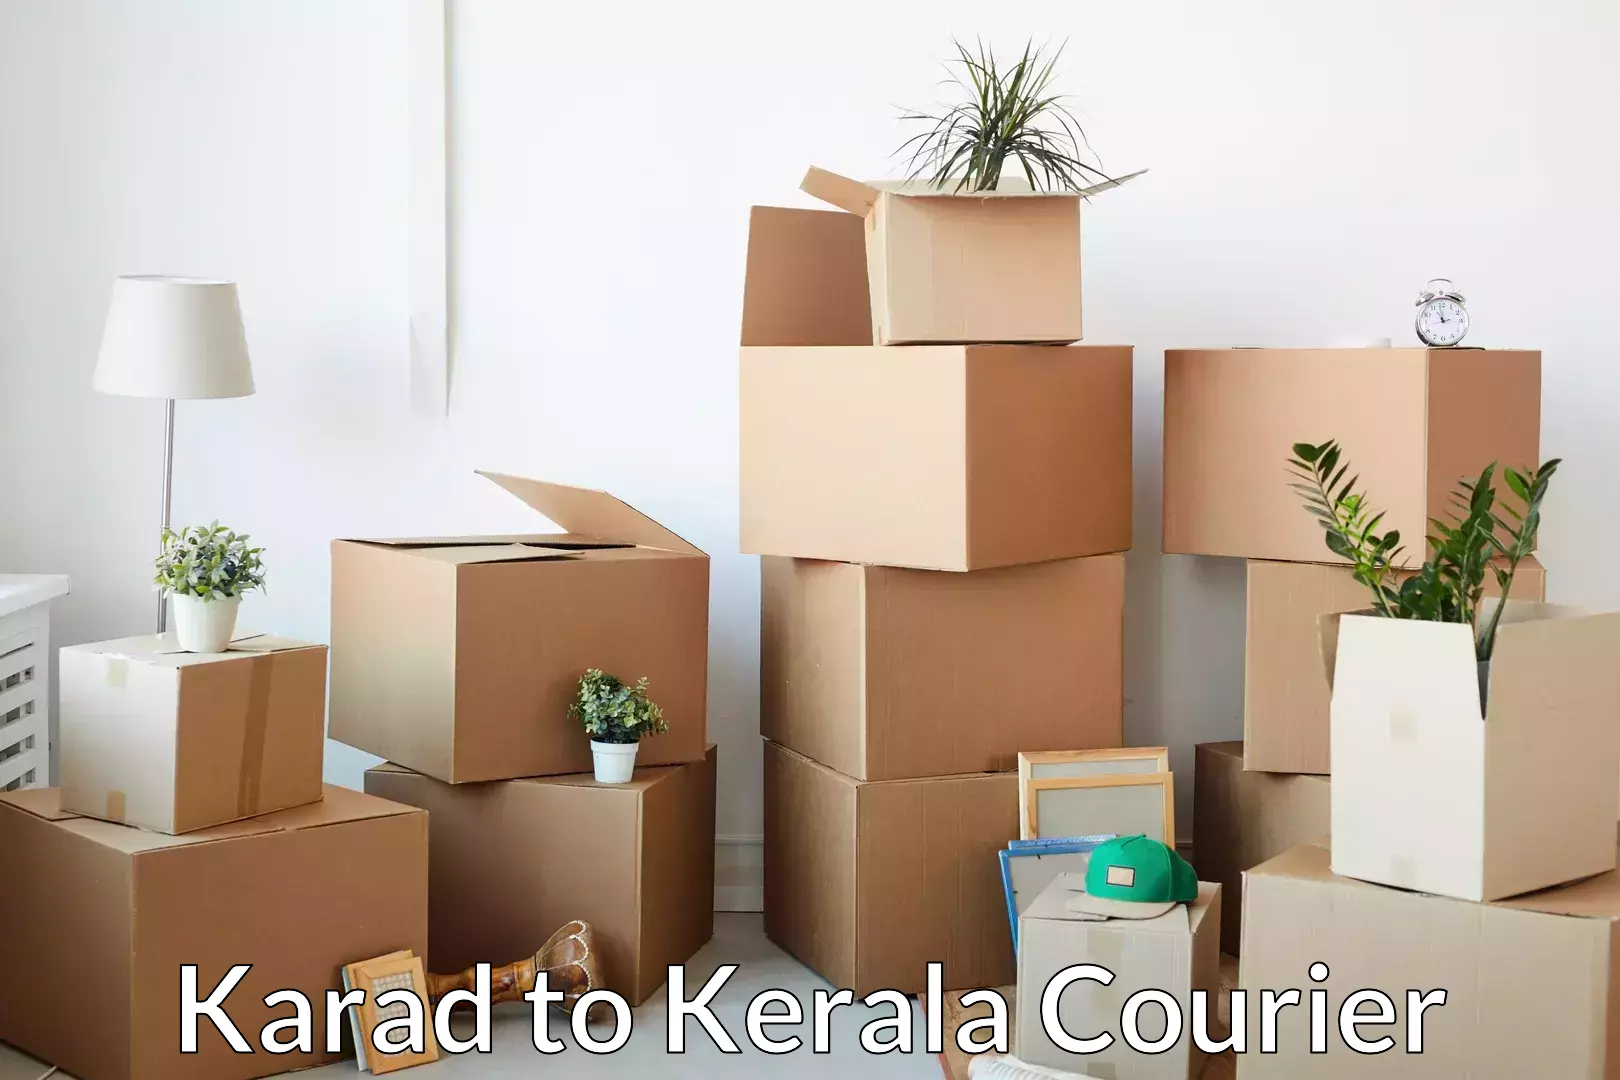 Trusted moving company Karad to Kollam